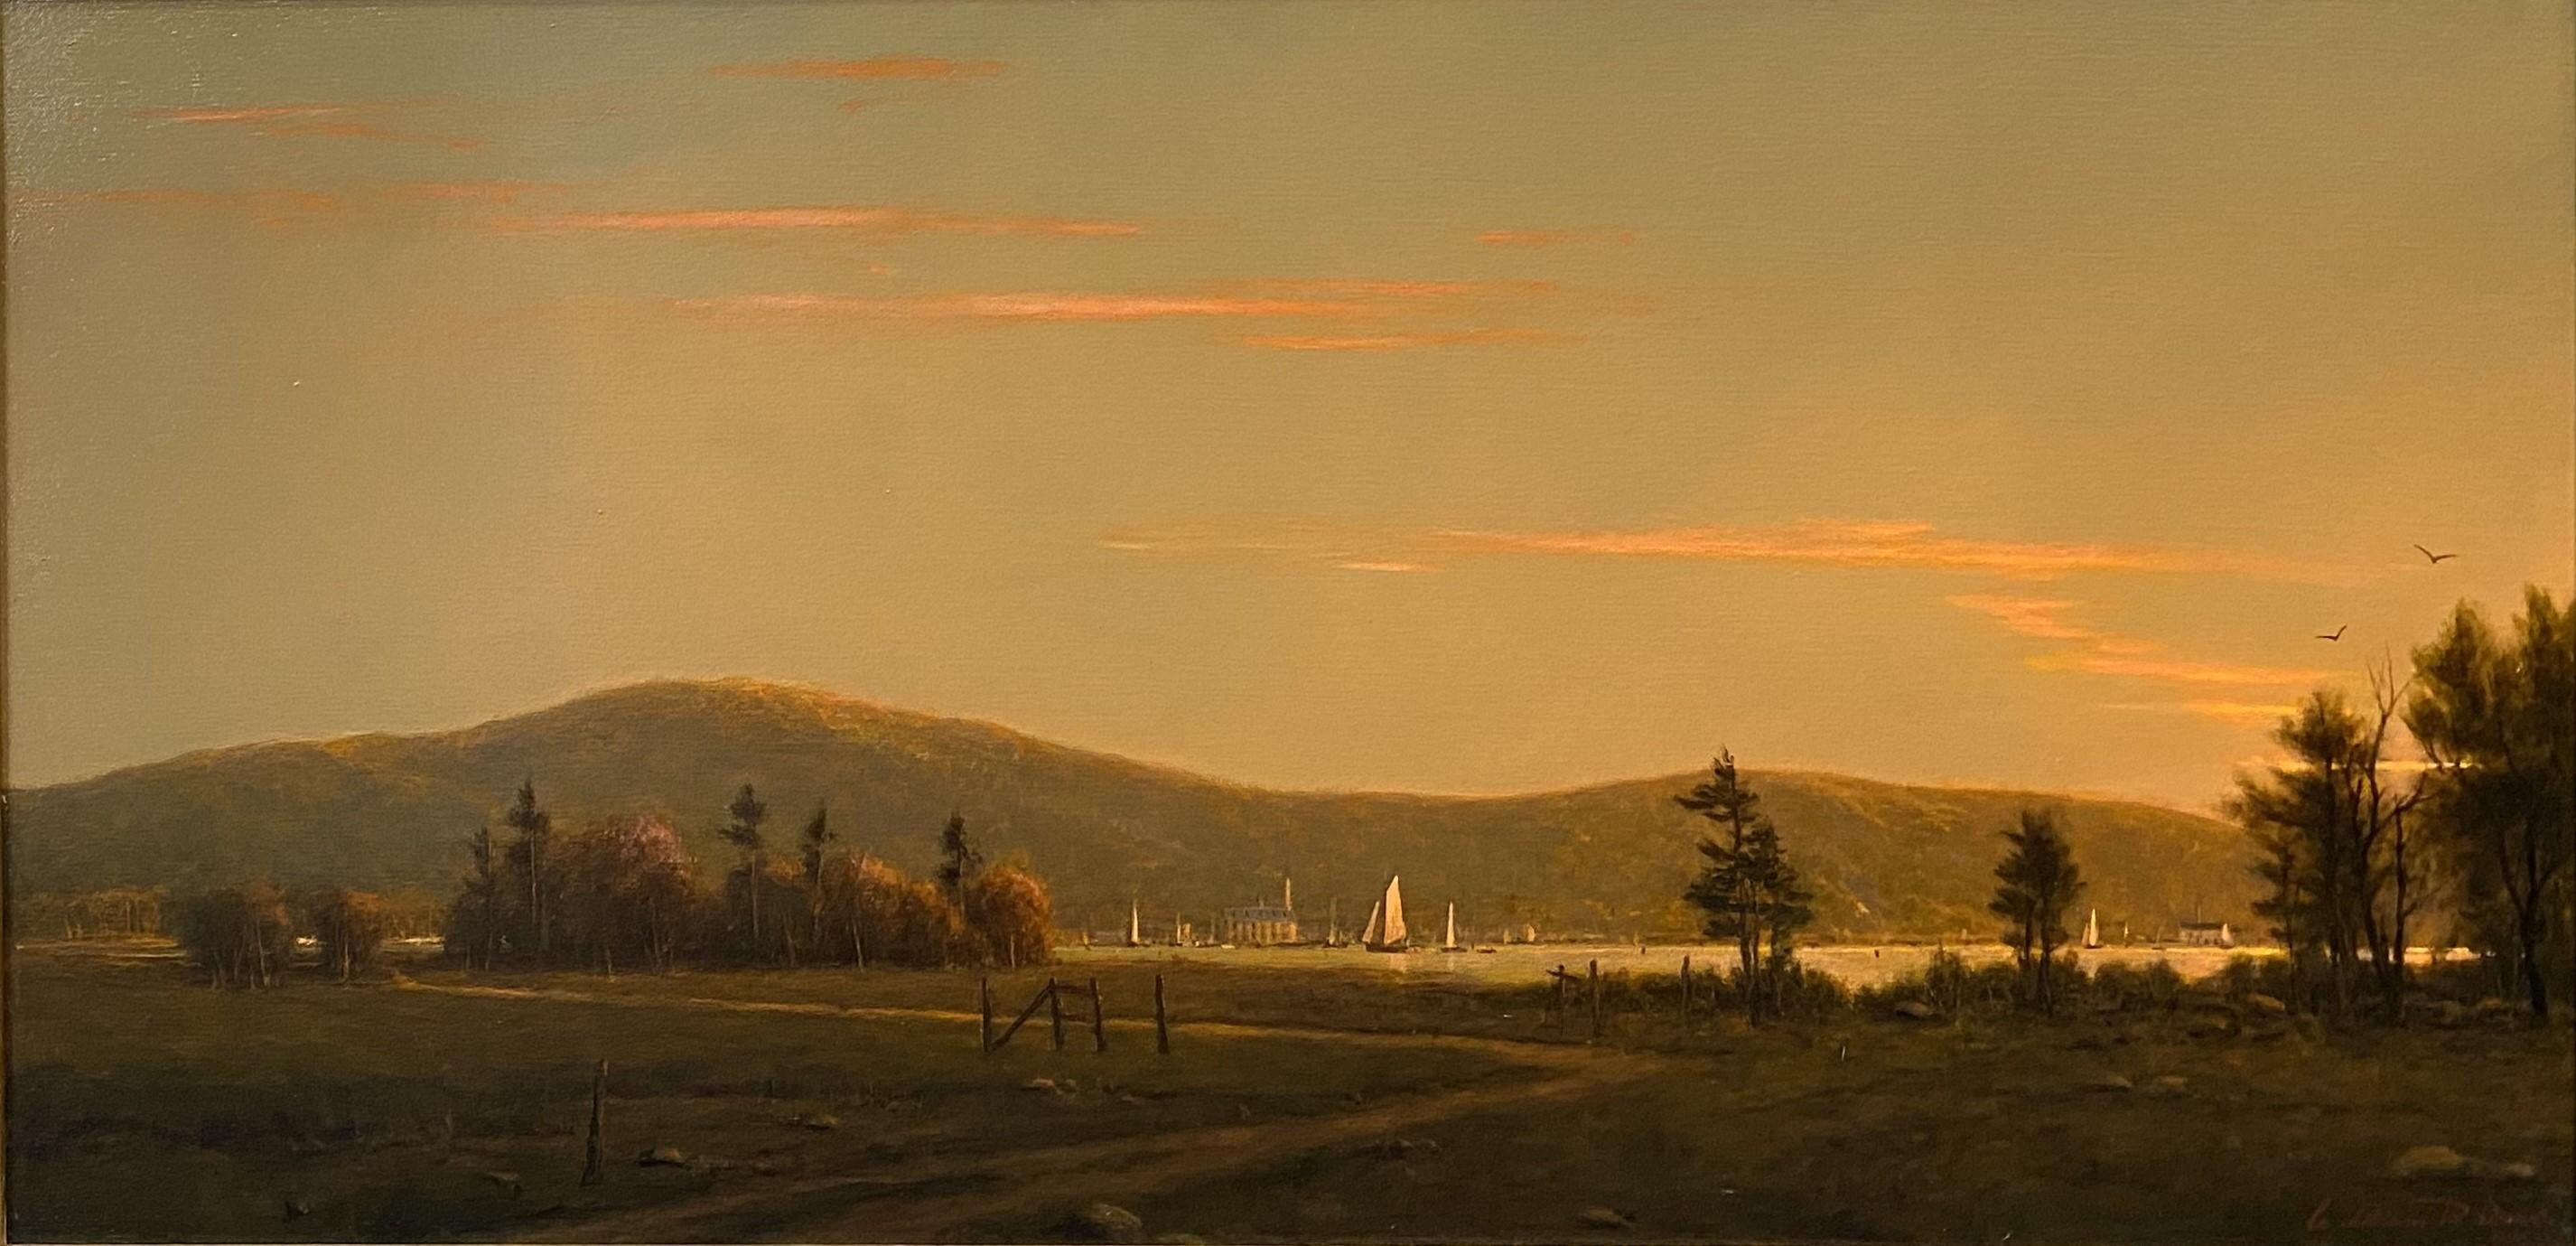 Sonnenuntergang im Hafen von Maine – Painting von William R. Davis